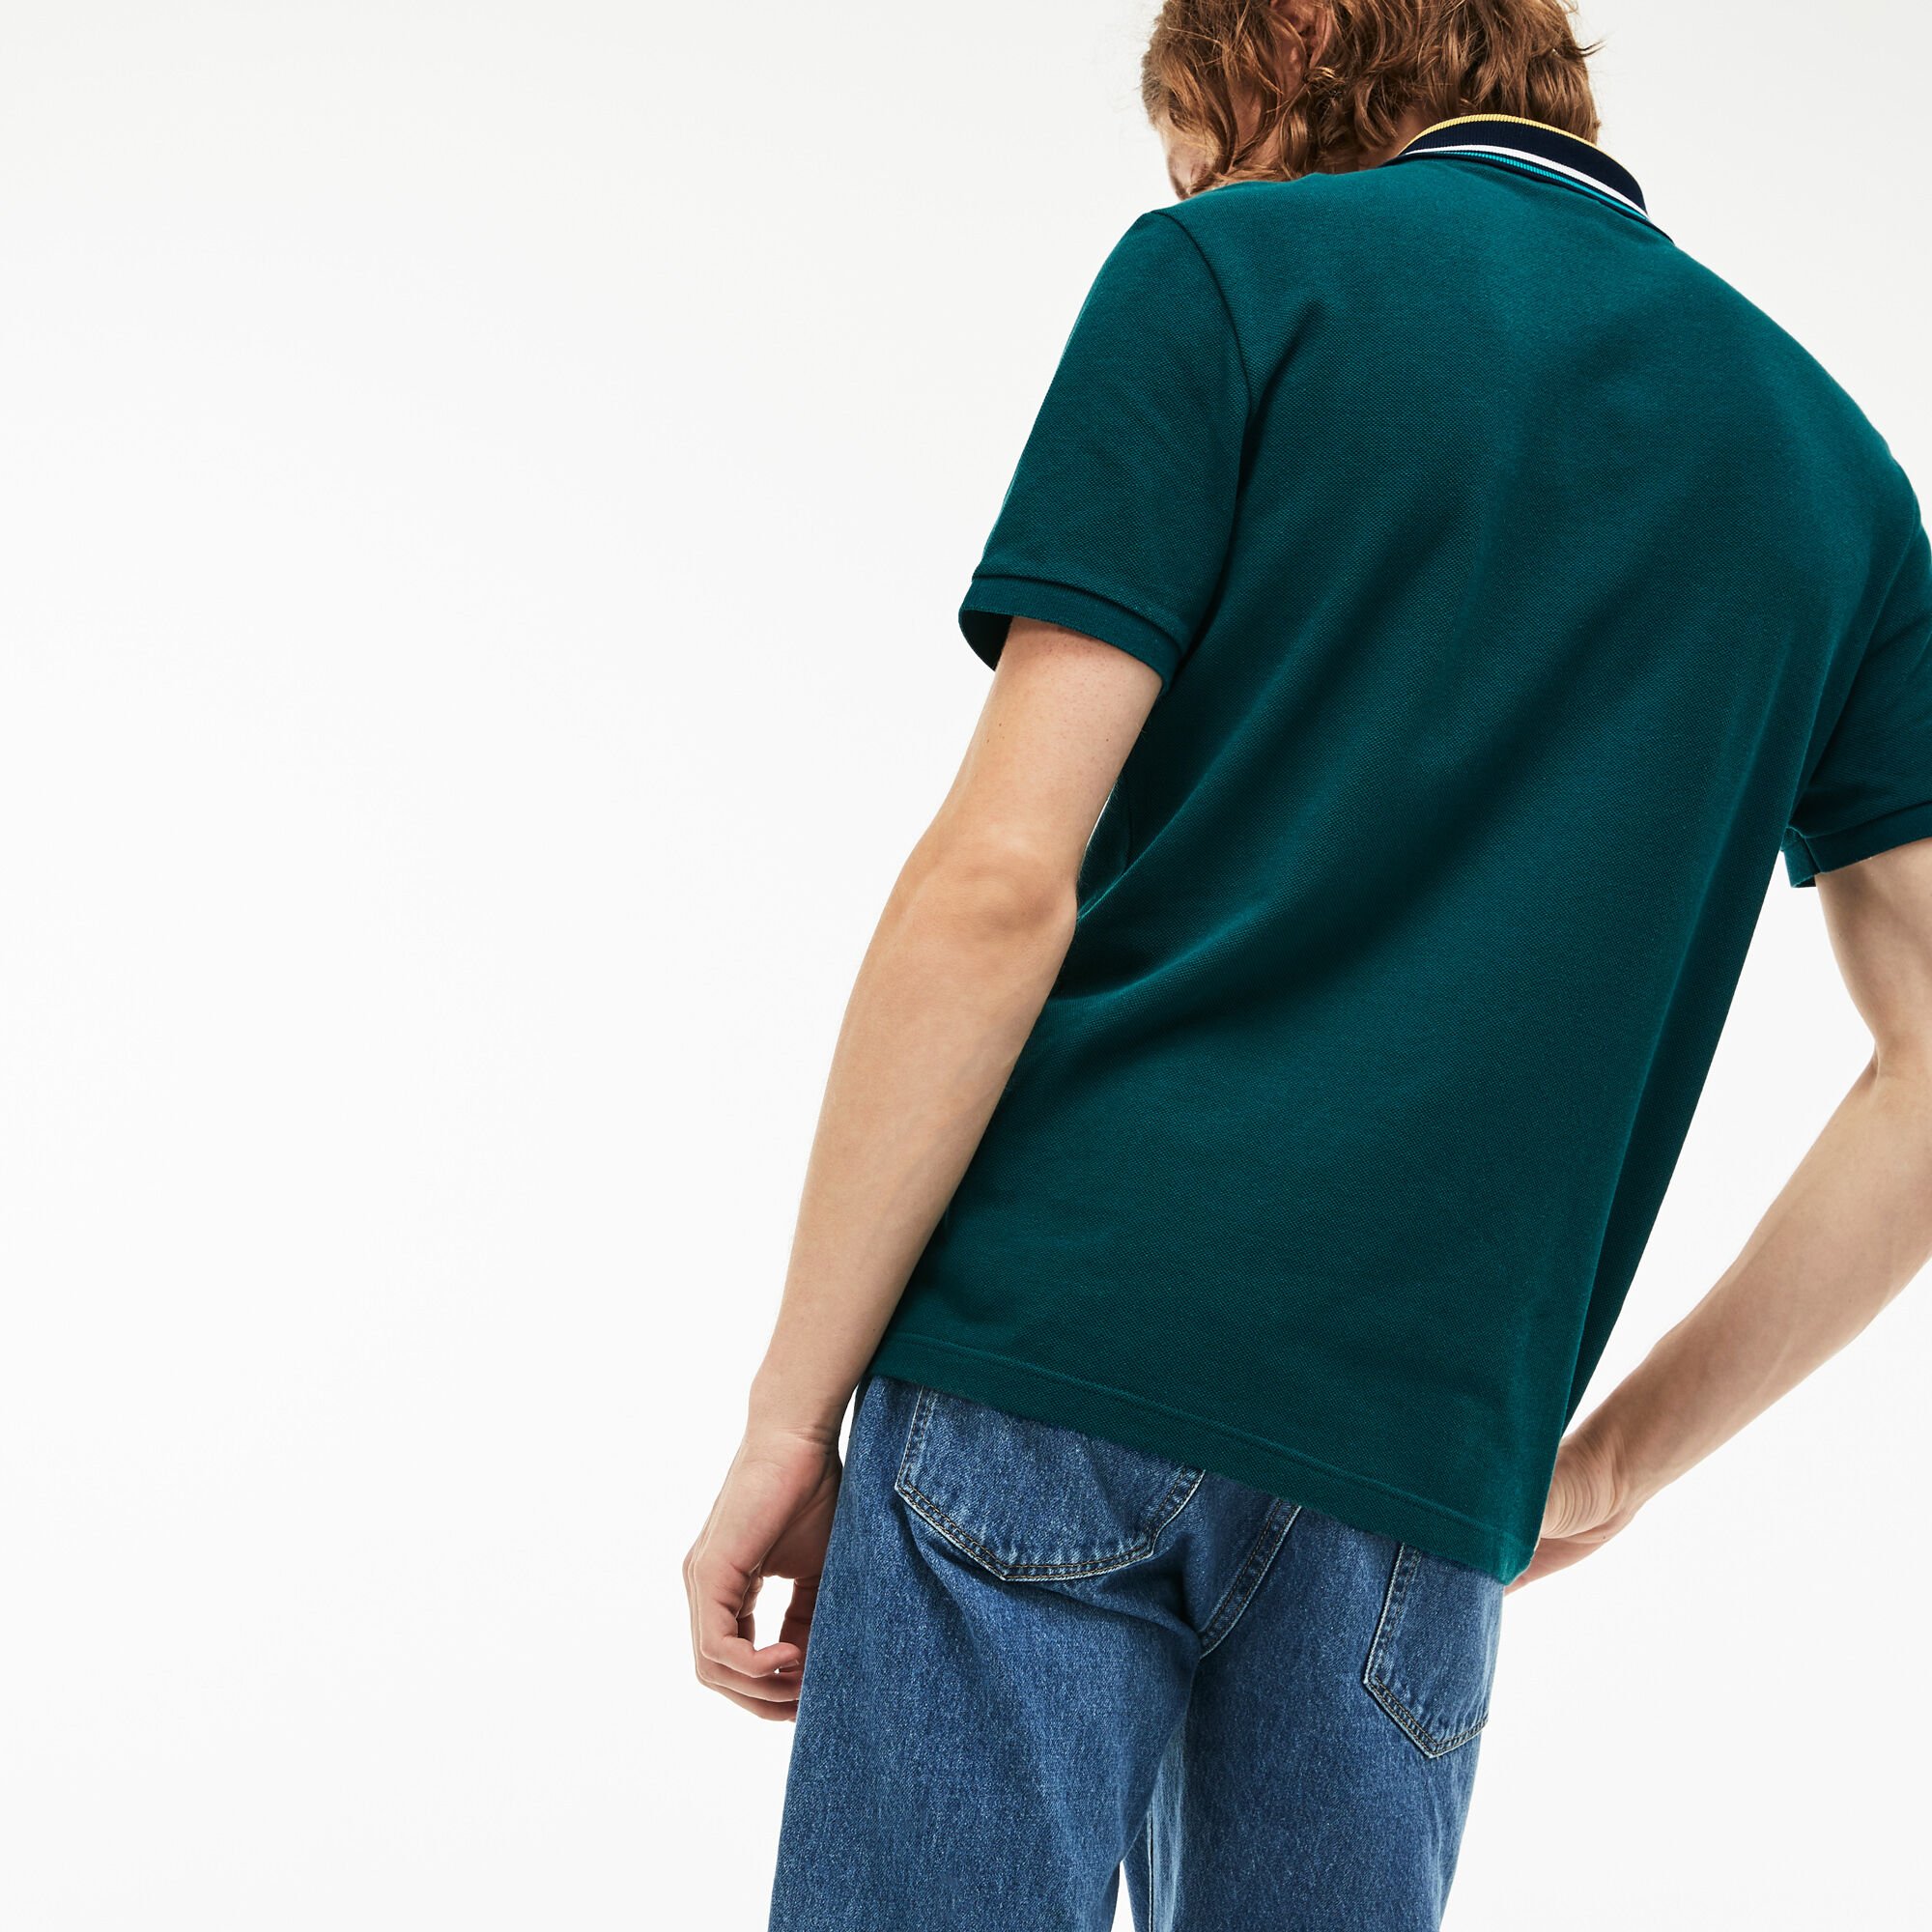 Men's Lacoste Slim Fit Striped Contrast Collar Petit Piqué Polo Shirt